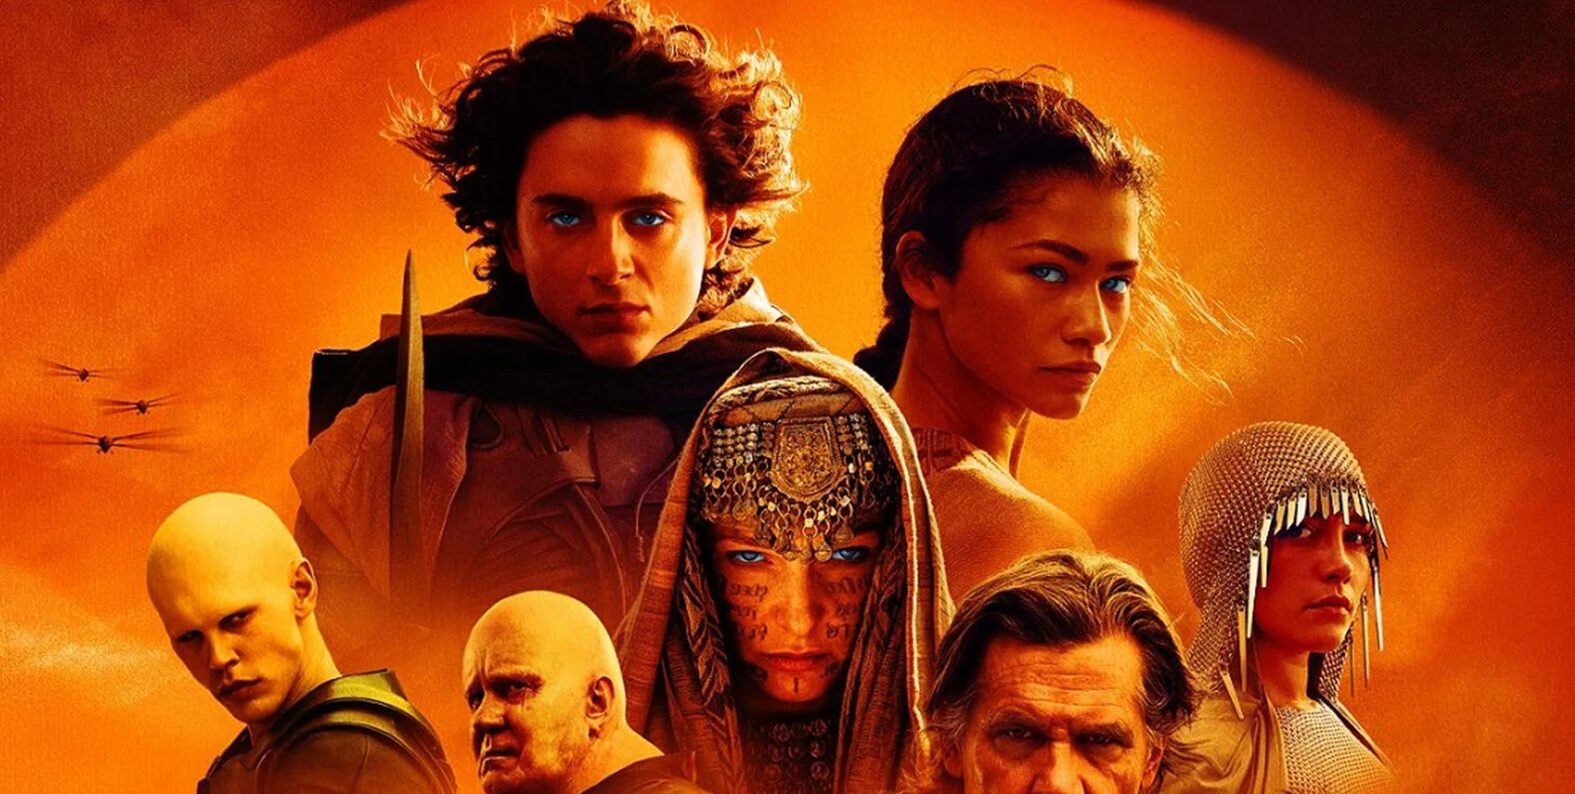 Al Garibaldi di Piazza Armerina il film Dune Parte 2: un viaggio immersivo ai confini dell’universo